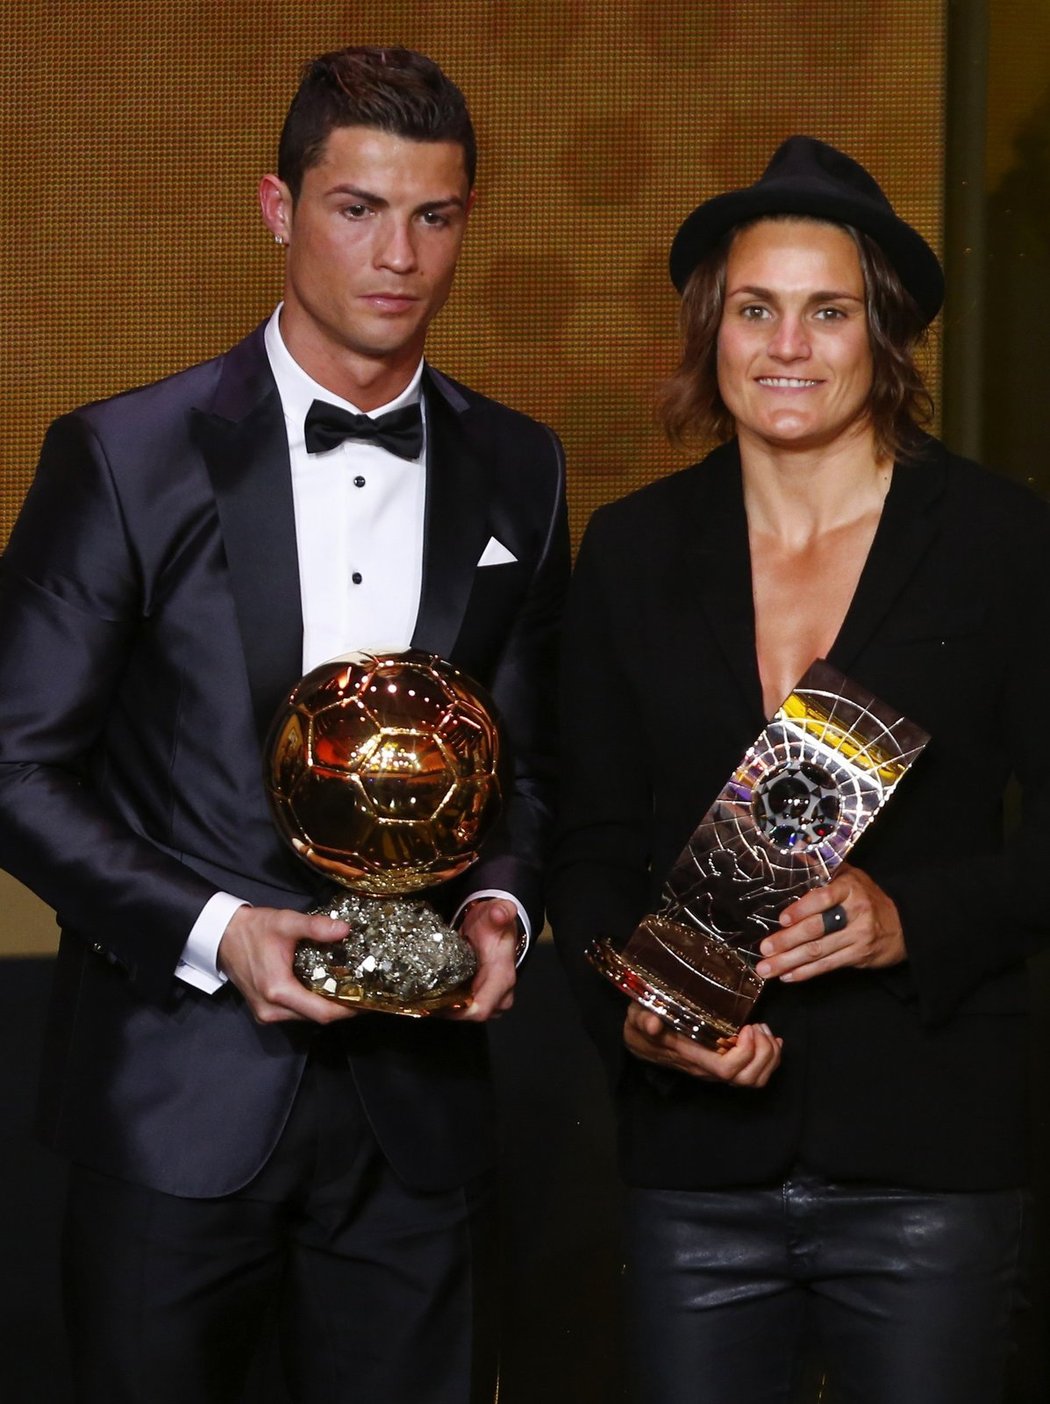 Nejlepší fotbalista a fotbalistka. Cristiano Ronaldo, vítěz Zlatého míče, s německou hráčkou Nadine Angererovou